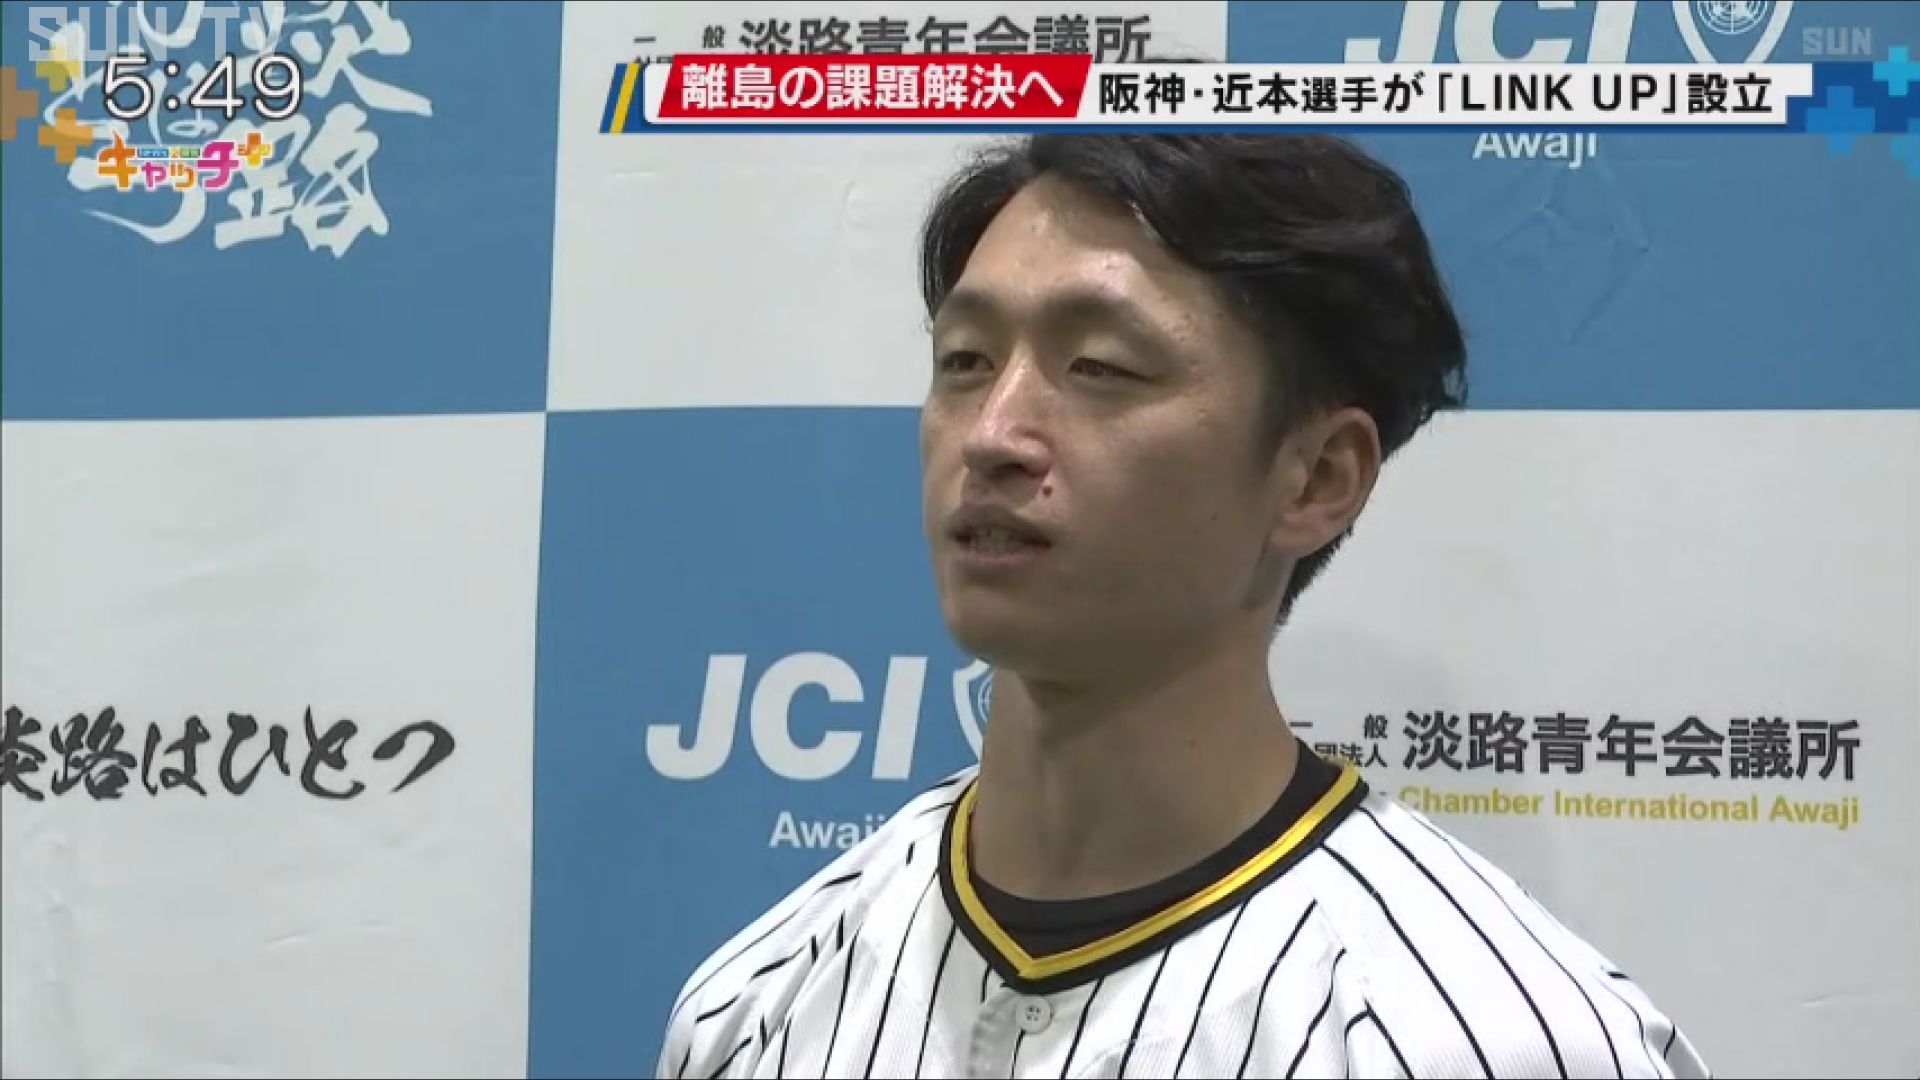 阪神タイガース・近本光司選手が一般社団法人を設立 離島の課題解決へ - サンテレビニュース